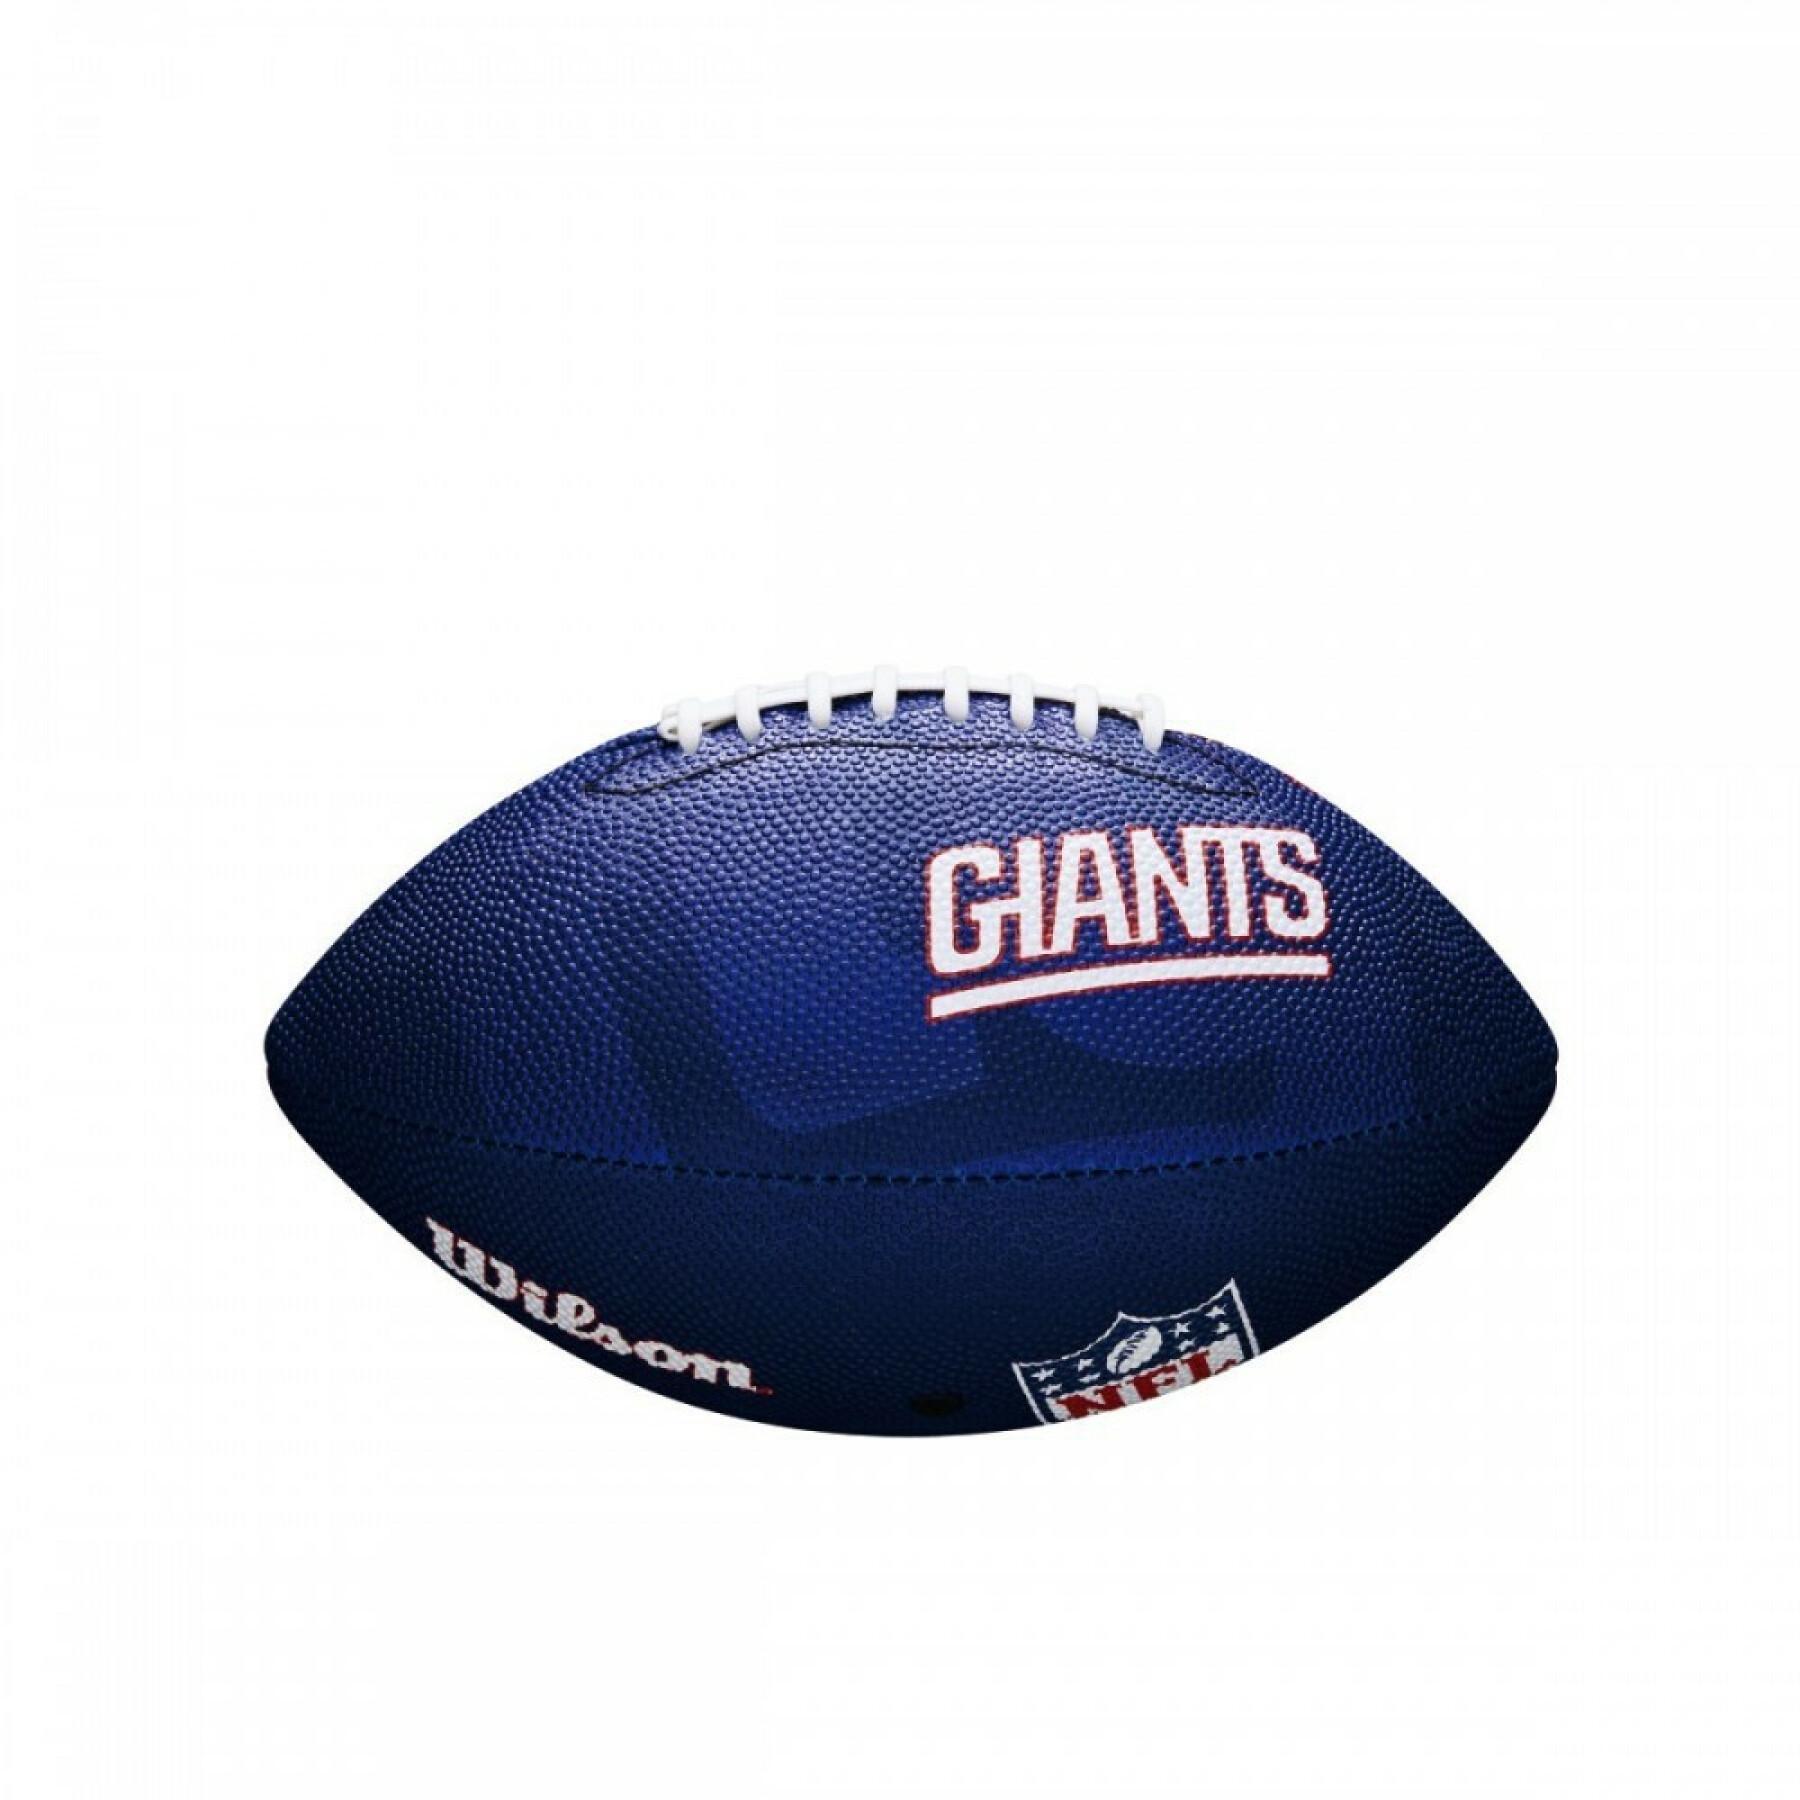 Barnens bal Wilson Giants NFL Logo